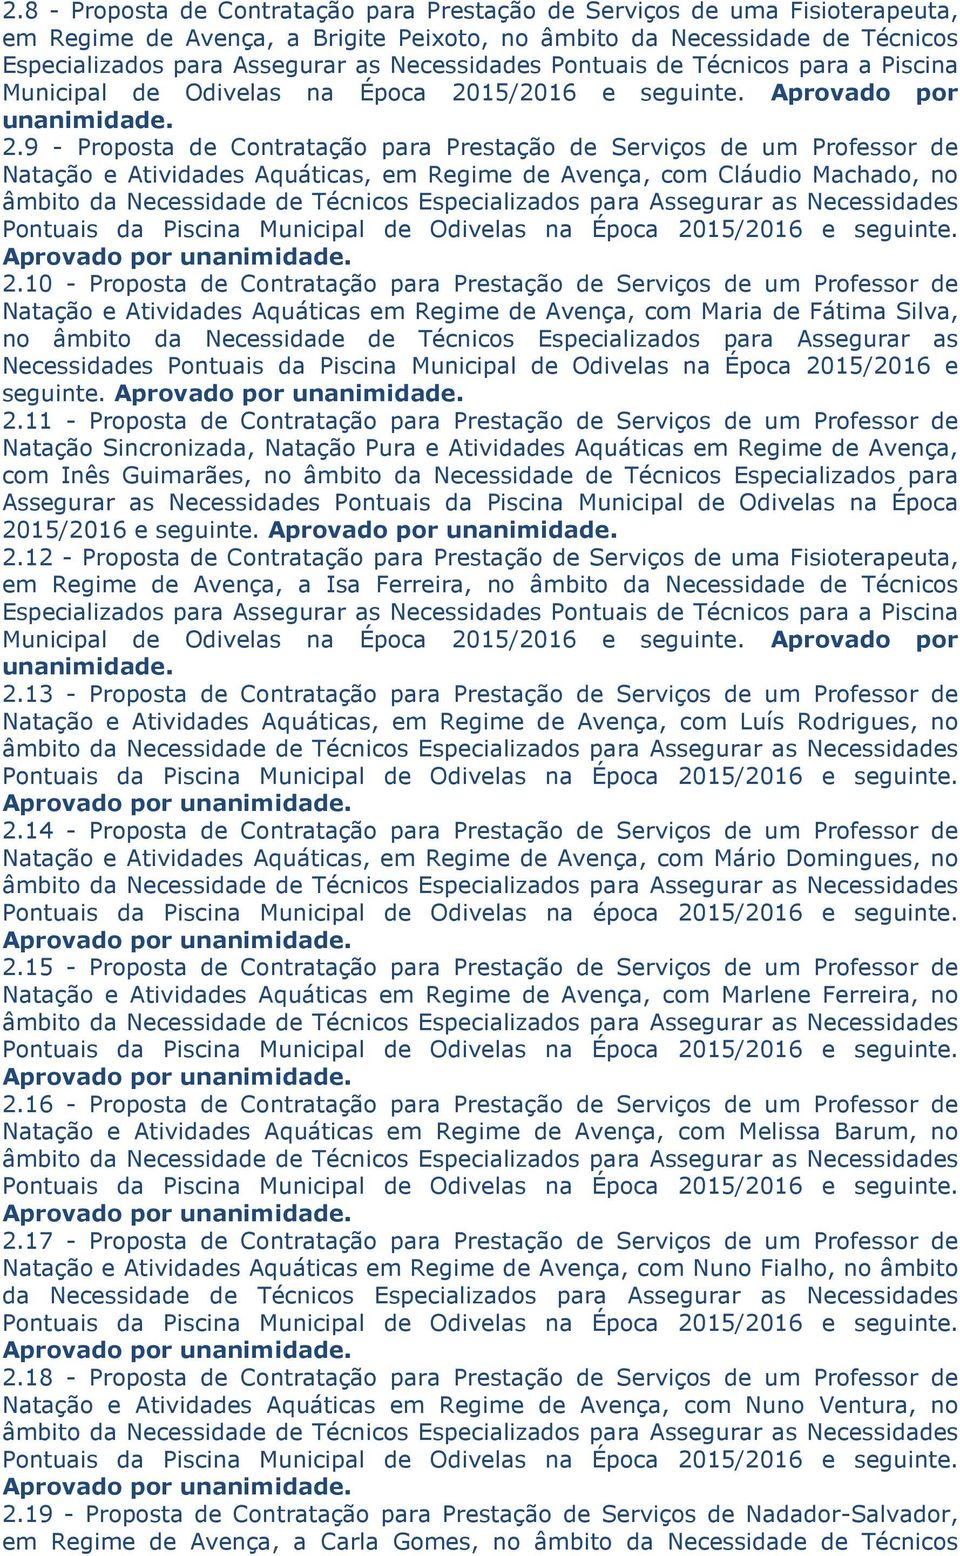 9 - Proposta de Contratação para Prestação de Serviços de um Professor de Natação e Atividades Aquáticas, em Regime de Avença, com Cláudio Machado, no 2.